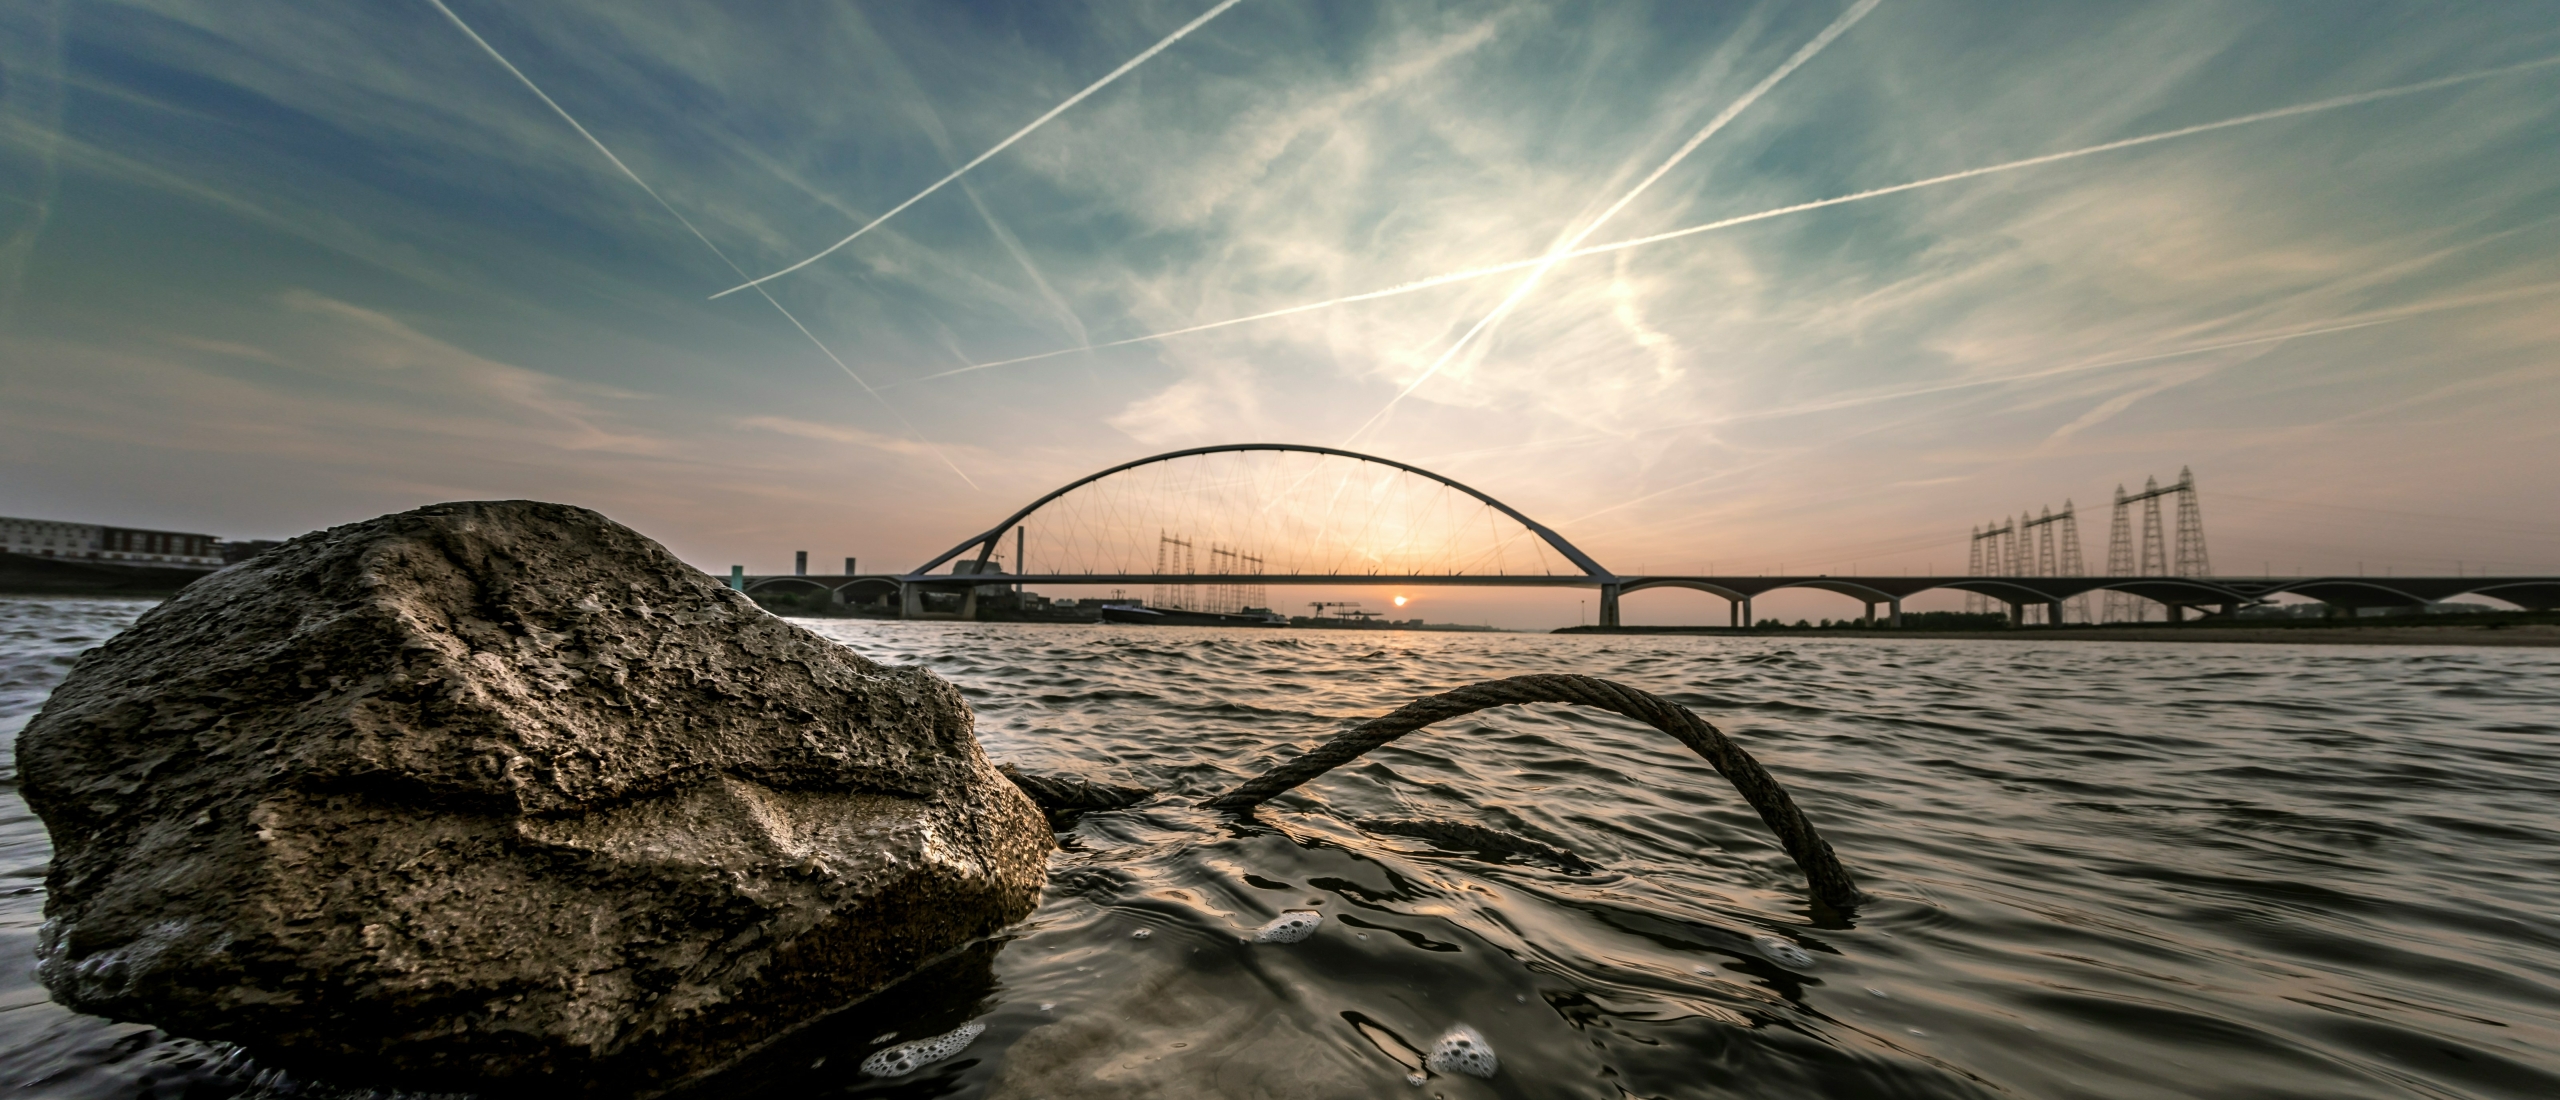 Verken deze prachtige locaties: Fotografeer op mooie locaties in Nederland